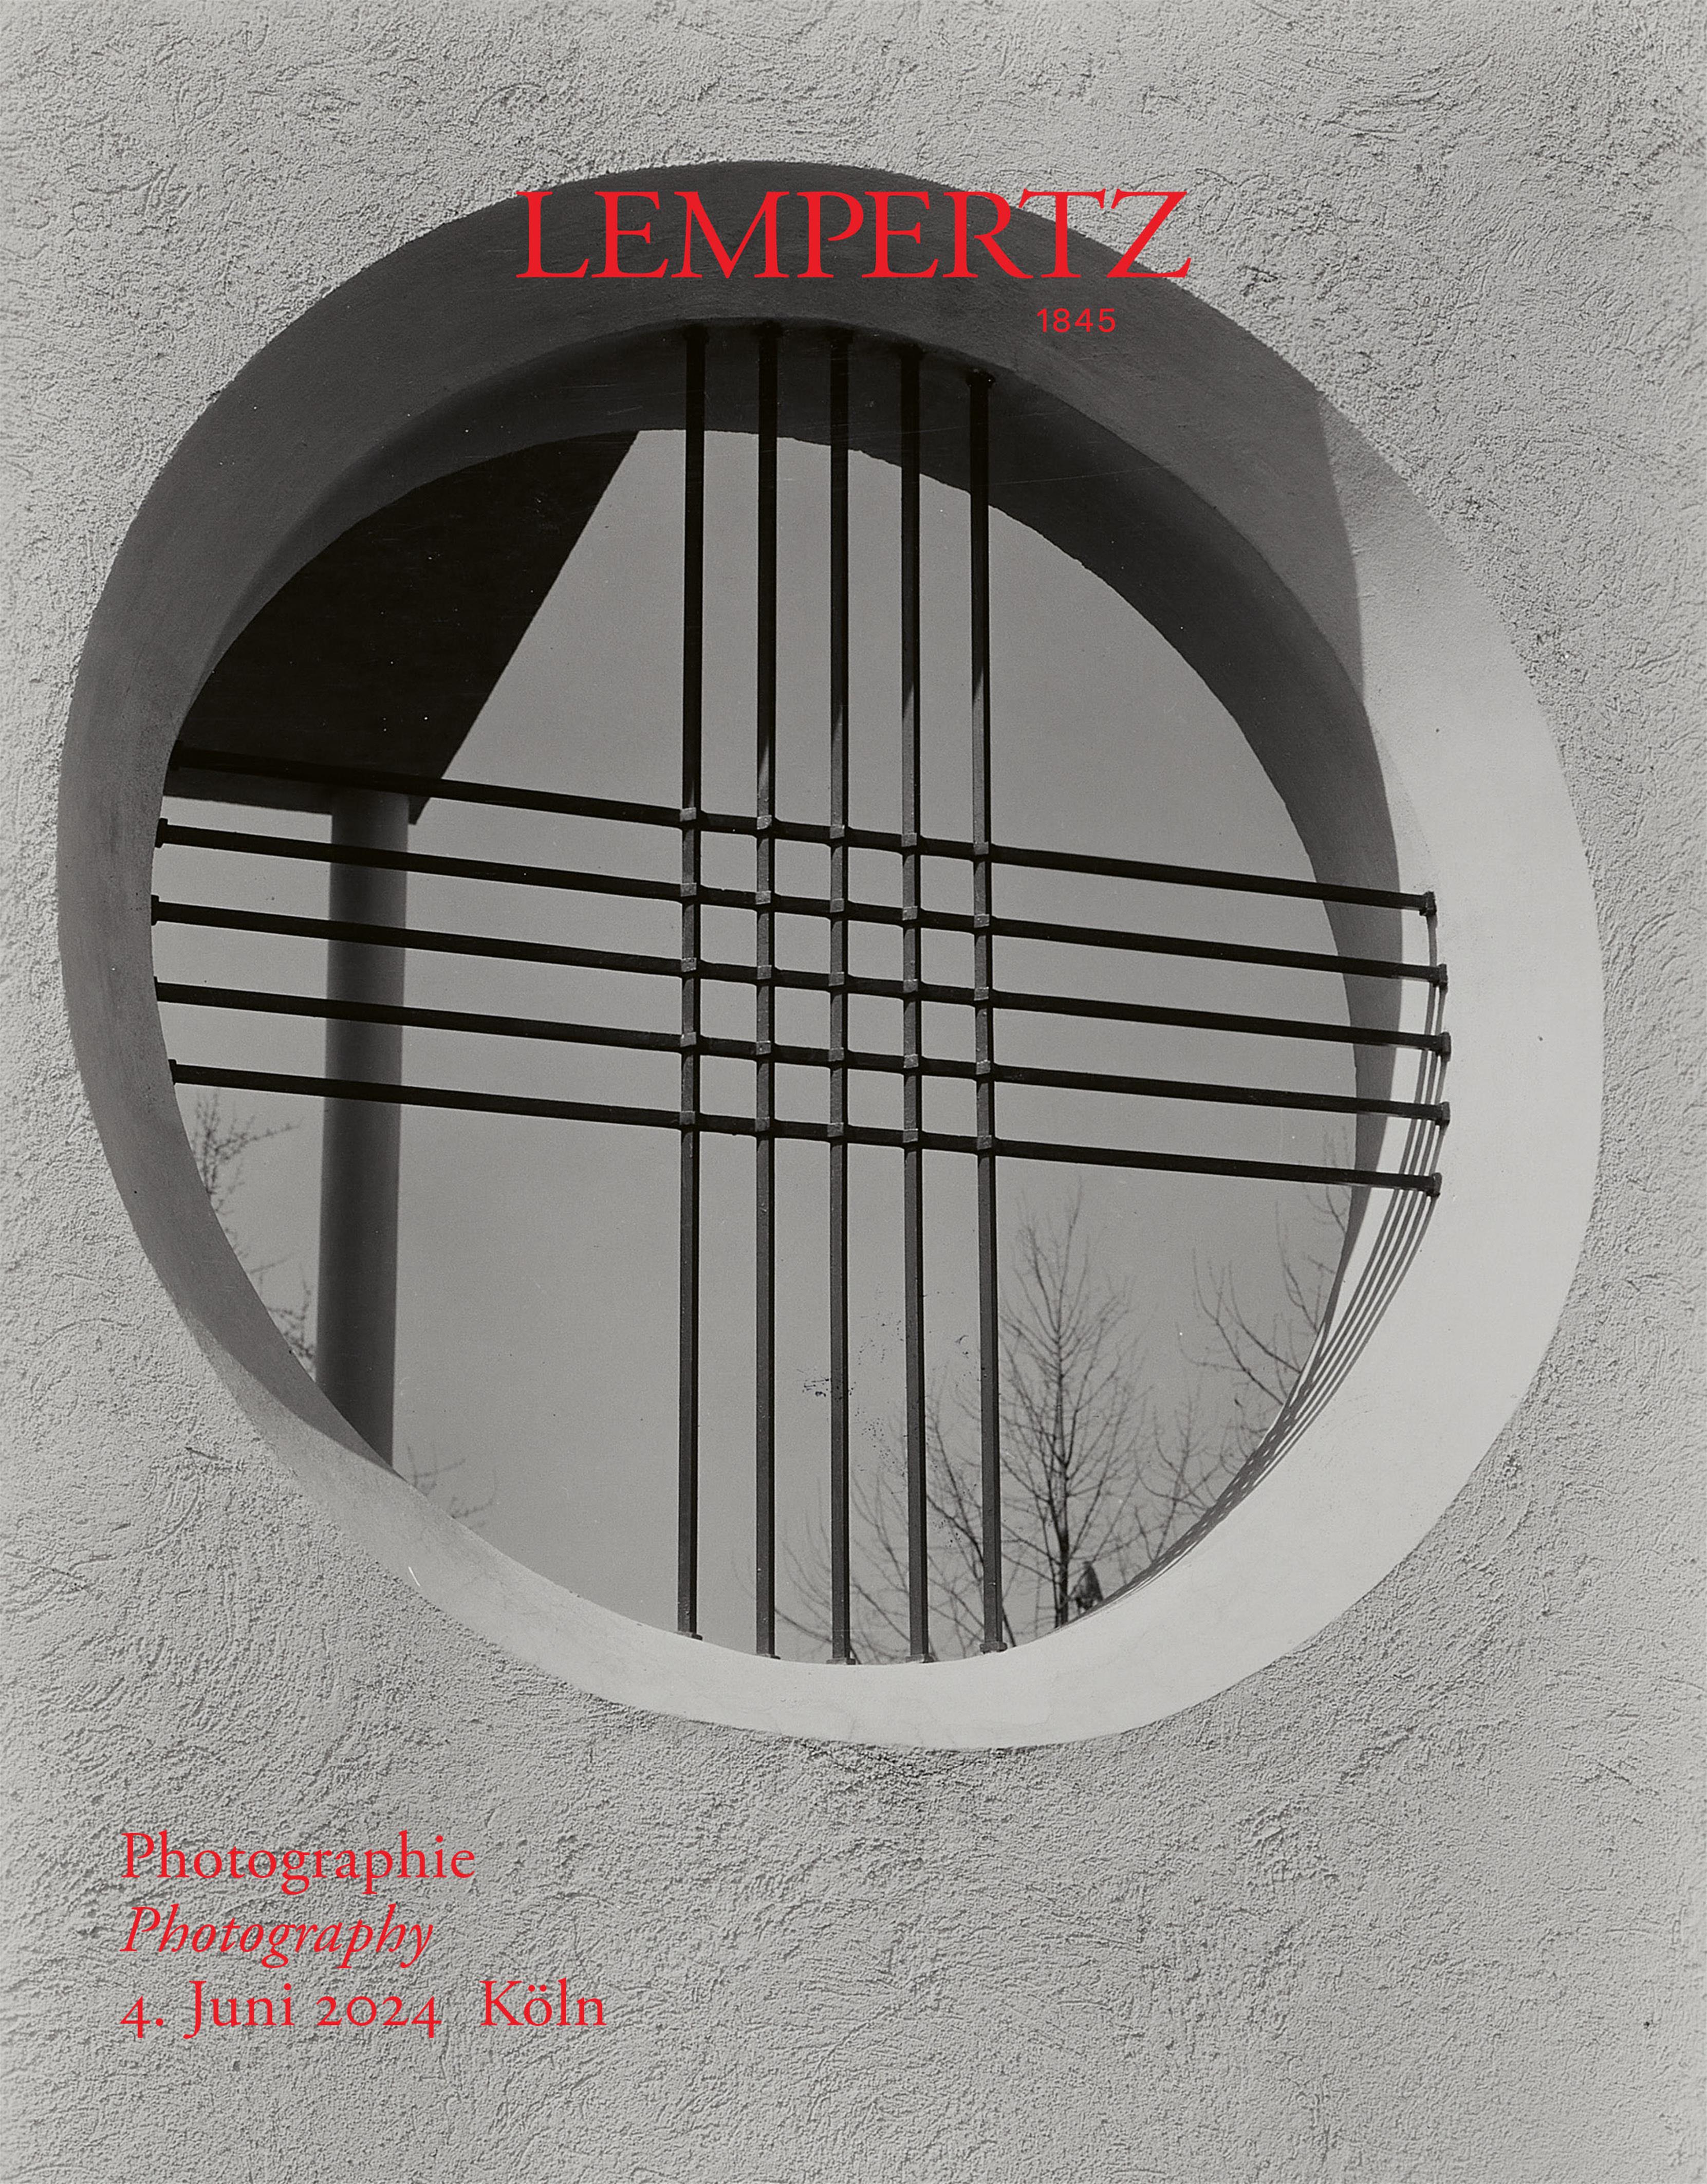 Auction house - Photography - Auction Catalogue 1246 – Auction House Lempertz